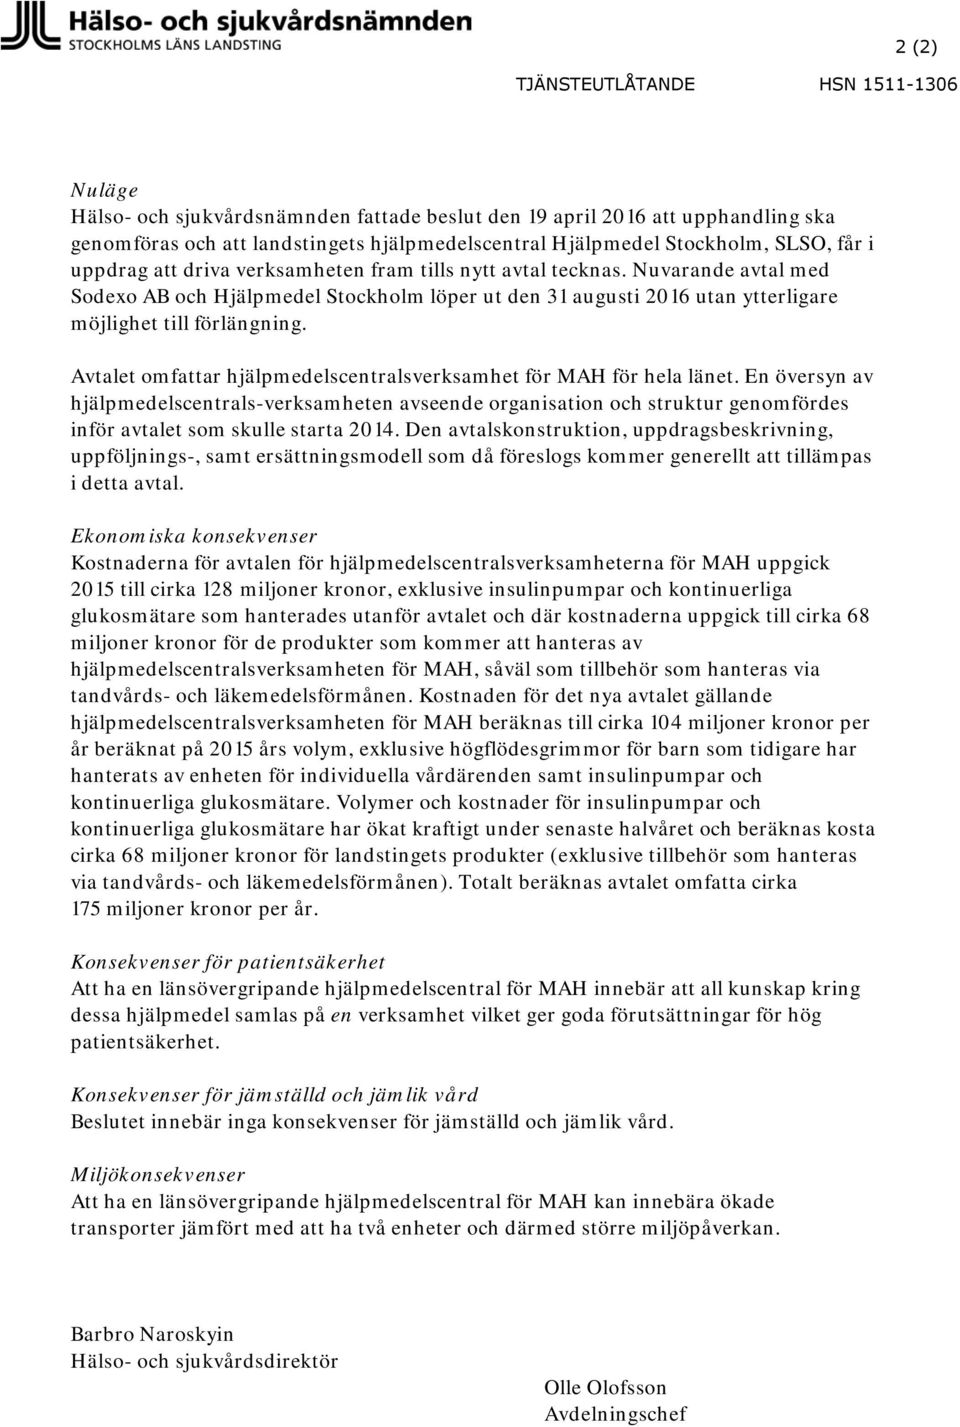 Nuvarande avtal med Sodexo AB och Hjälpmedel Stockholm löper ut den 31 augusti 2016 utan ytterligare möjlighet till förlängning. Avtalet omfattar hjälpmedelscentralsverksamhet för MAH för hela länet.